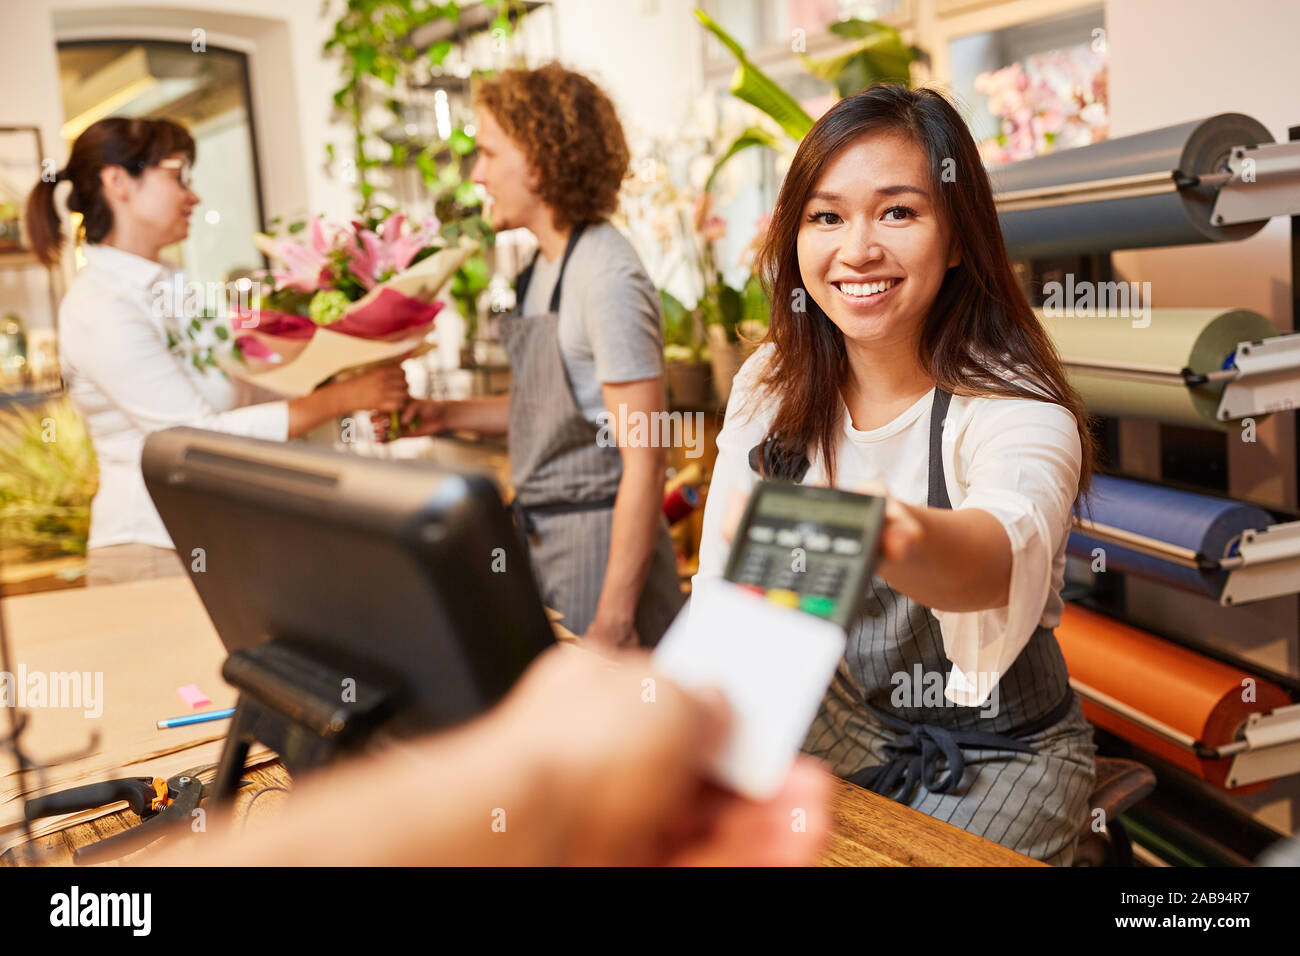 Jeune femme comme caissier prend la carte de crédit pour payer à la caisse Banque D'Images